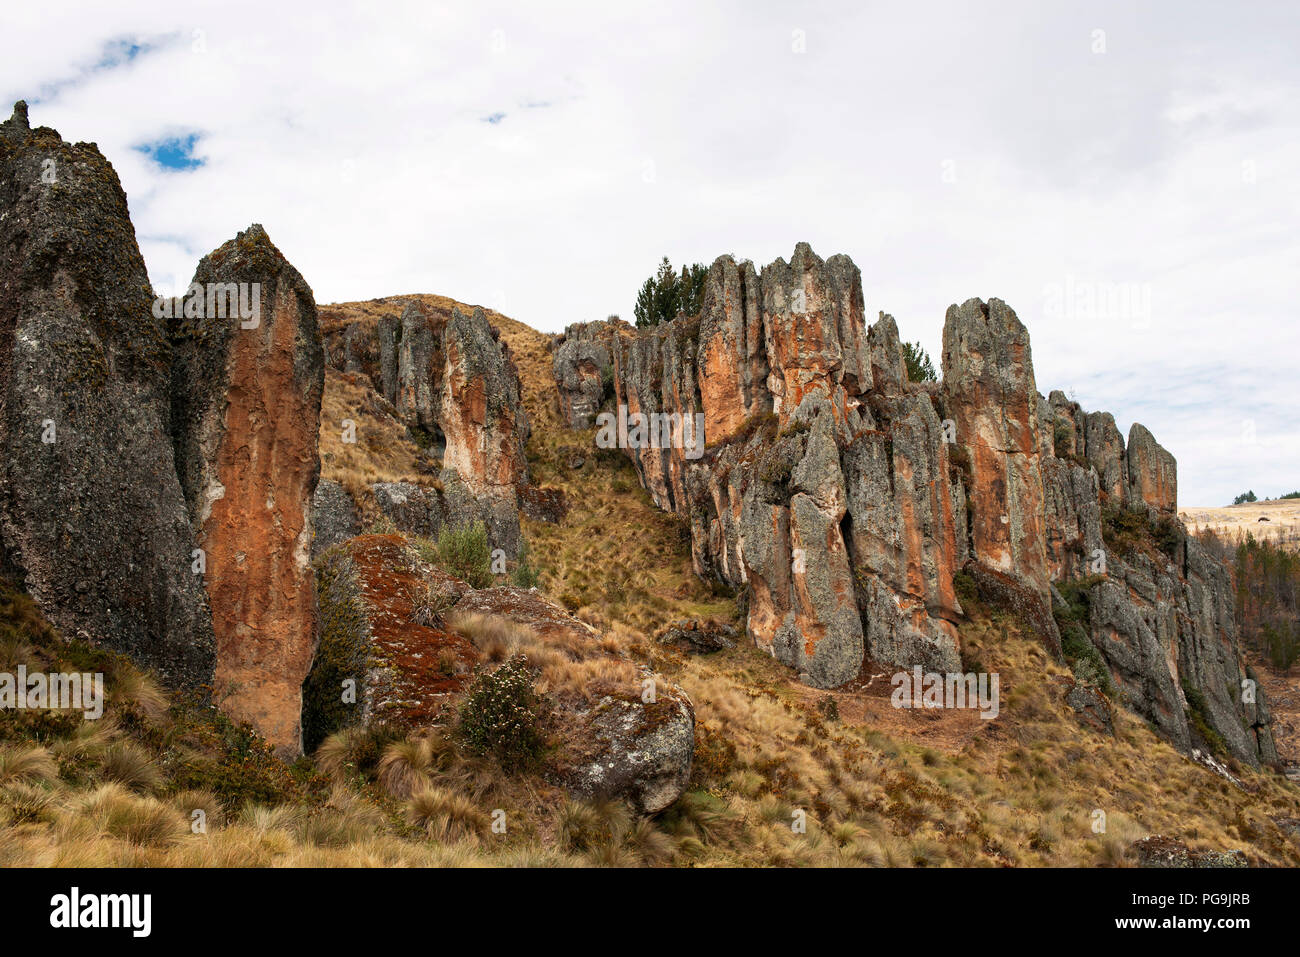 Foreste di pietra di Cumbe Mayo. Los Frailones sono massicci pilastri vulcanica, alcune alte 60 piedi (18 m). Cajamarca, Perù. Lug 2018 Foto Stock